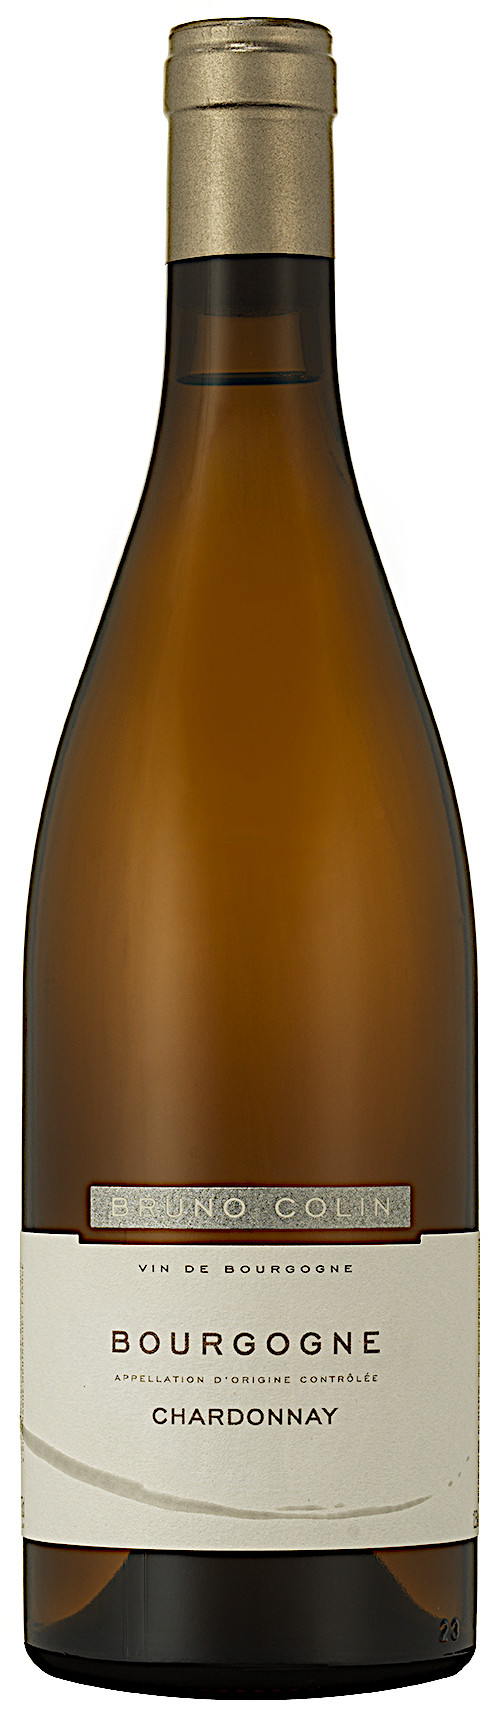 image of Domaine Bruno Colin Bourgogne Chardonnay 2020